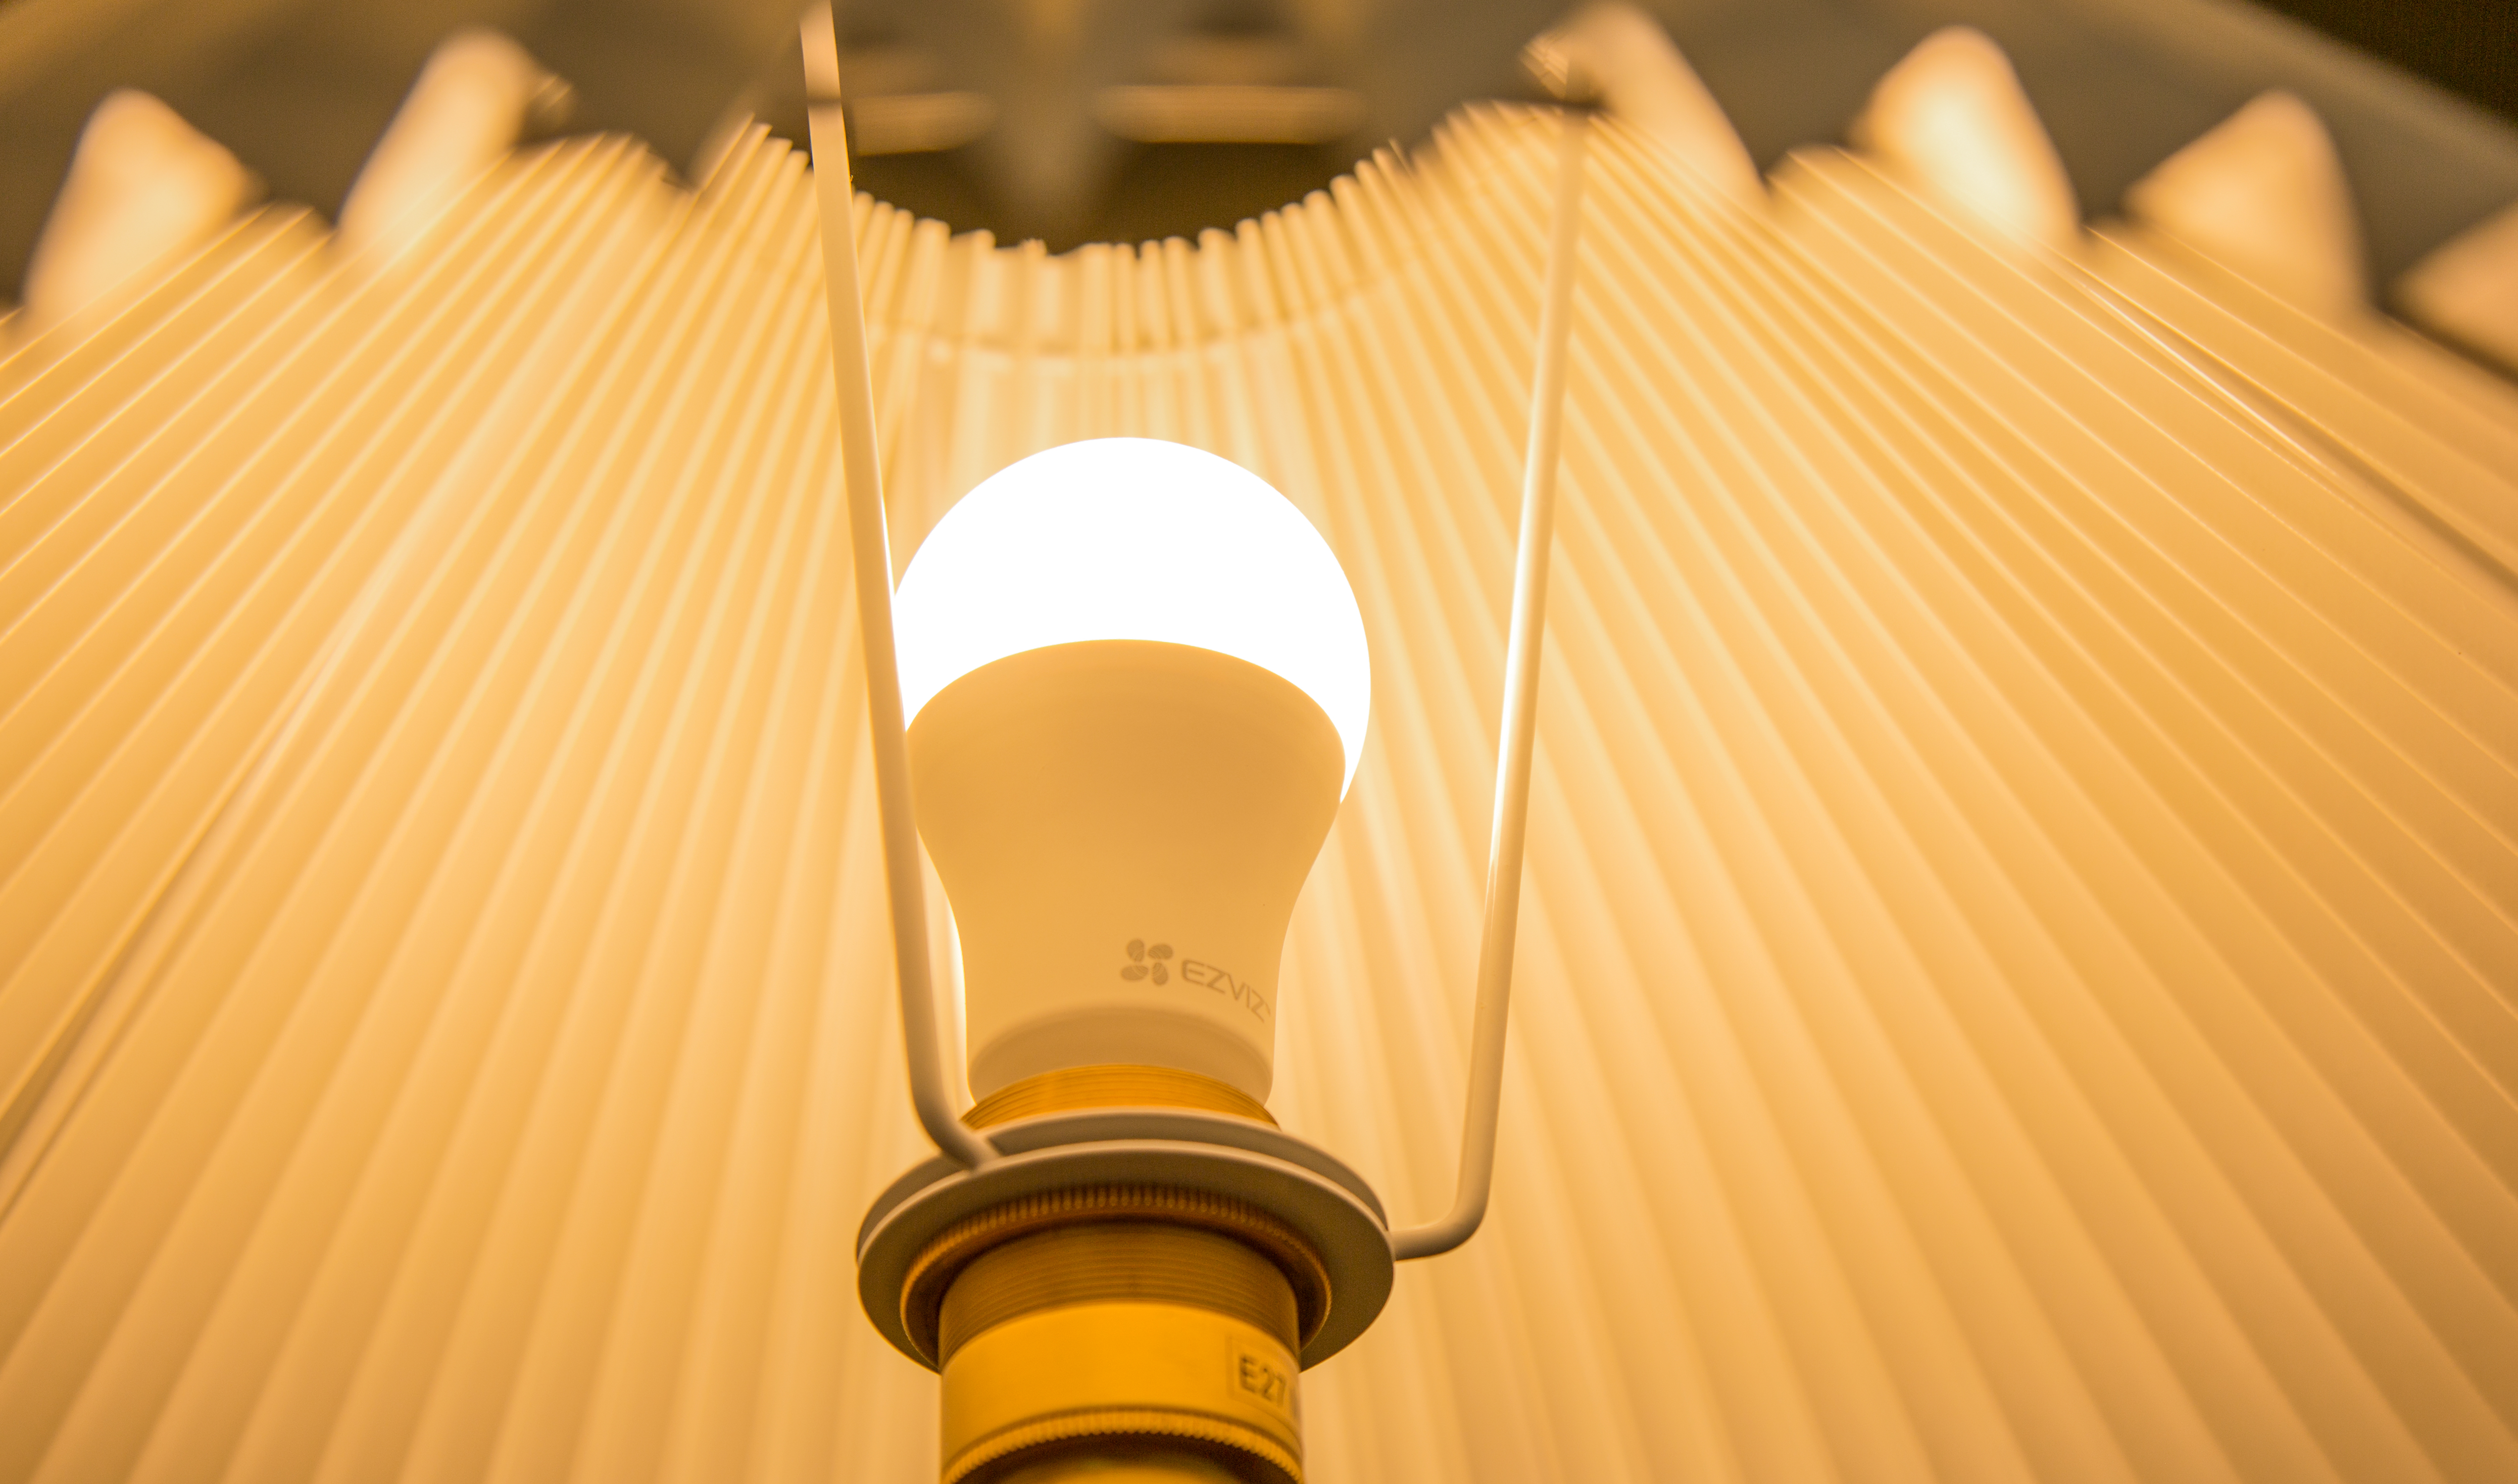 Bóng đèn thông minh Ezviz LB1 điều chỉnh độ sáng và nhiệt màu, Kết nối WI-FI, Điều Khiển Từ Xa Qua Ứng Dụng Di Động, Cài đặt lịch trình & hẹn giờ, Tiết kiệm năng lượng